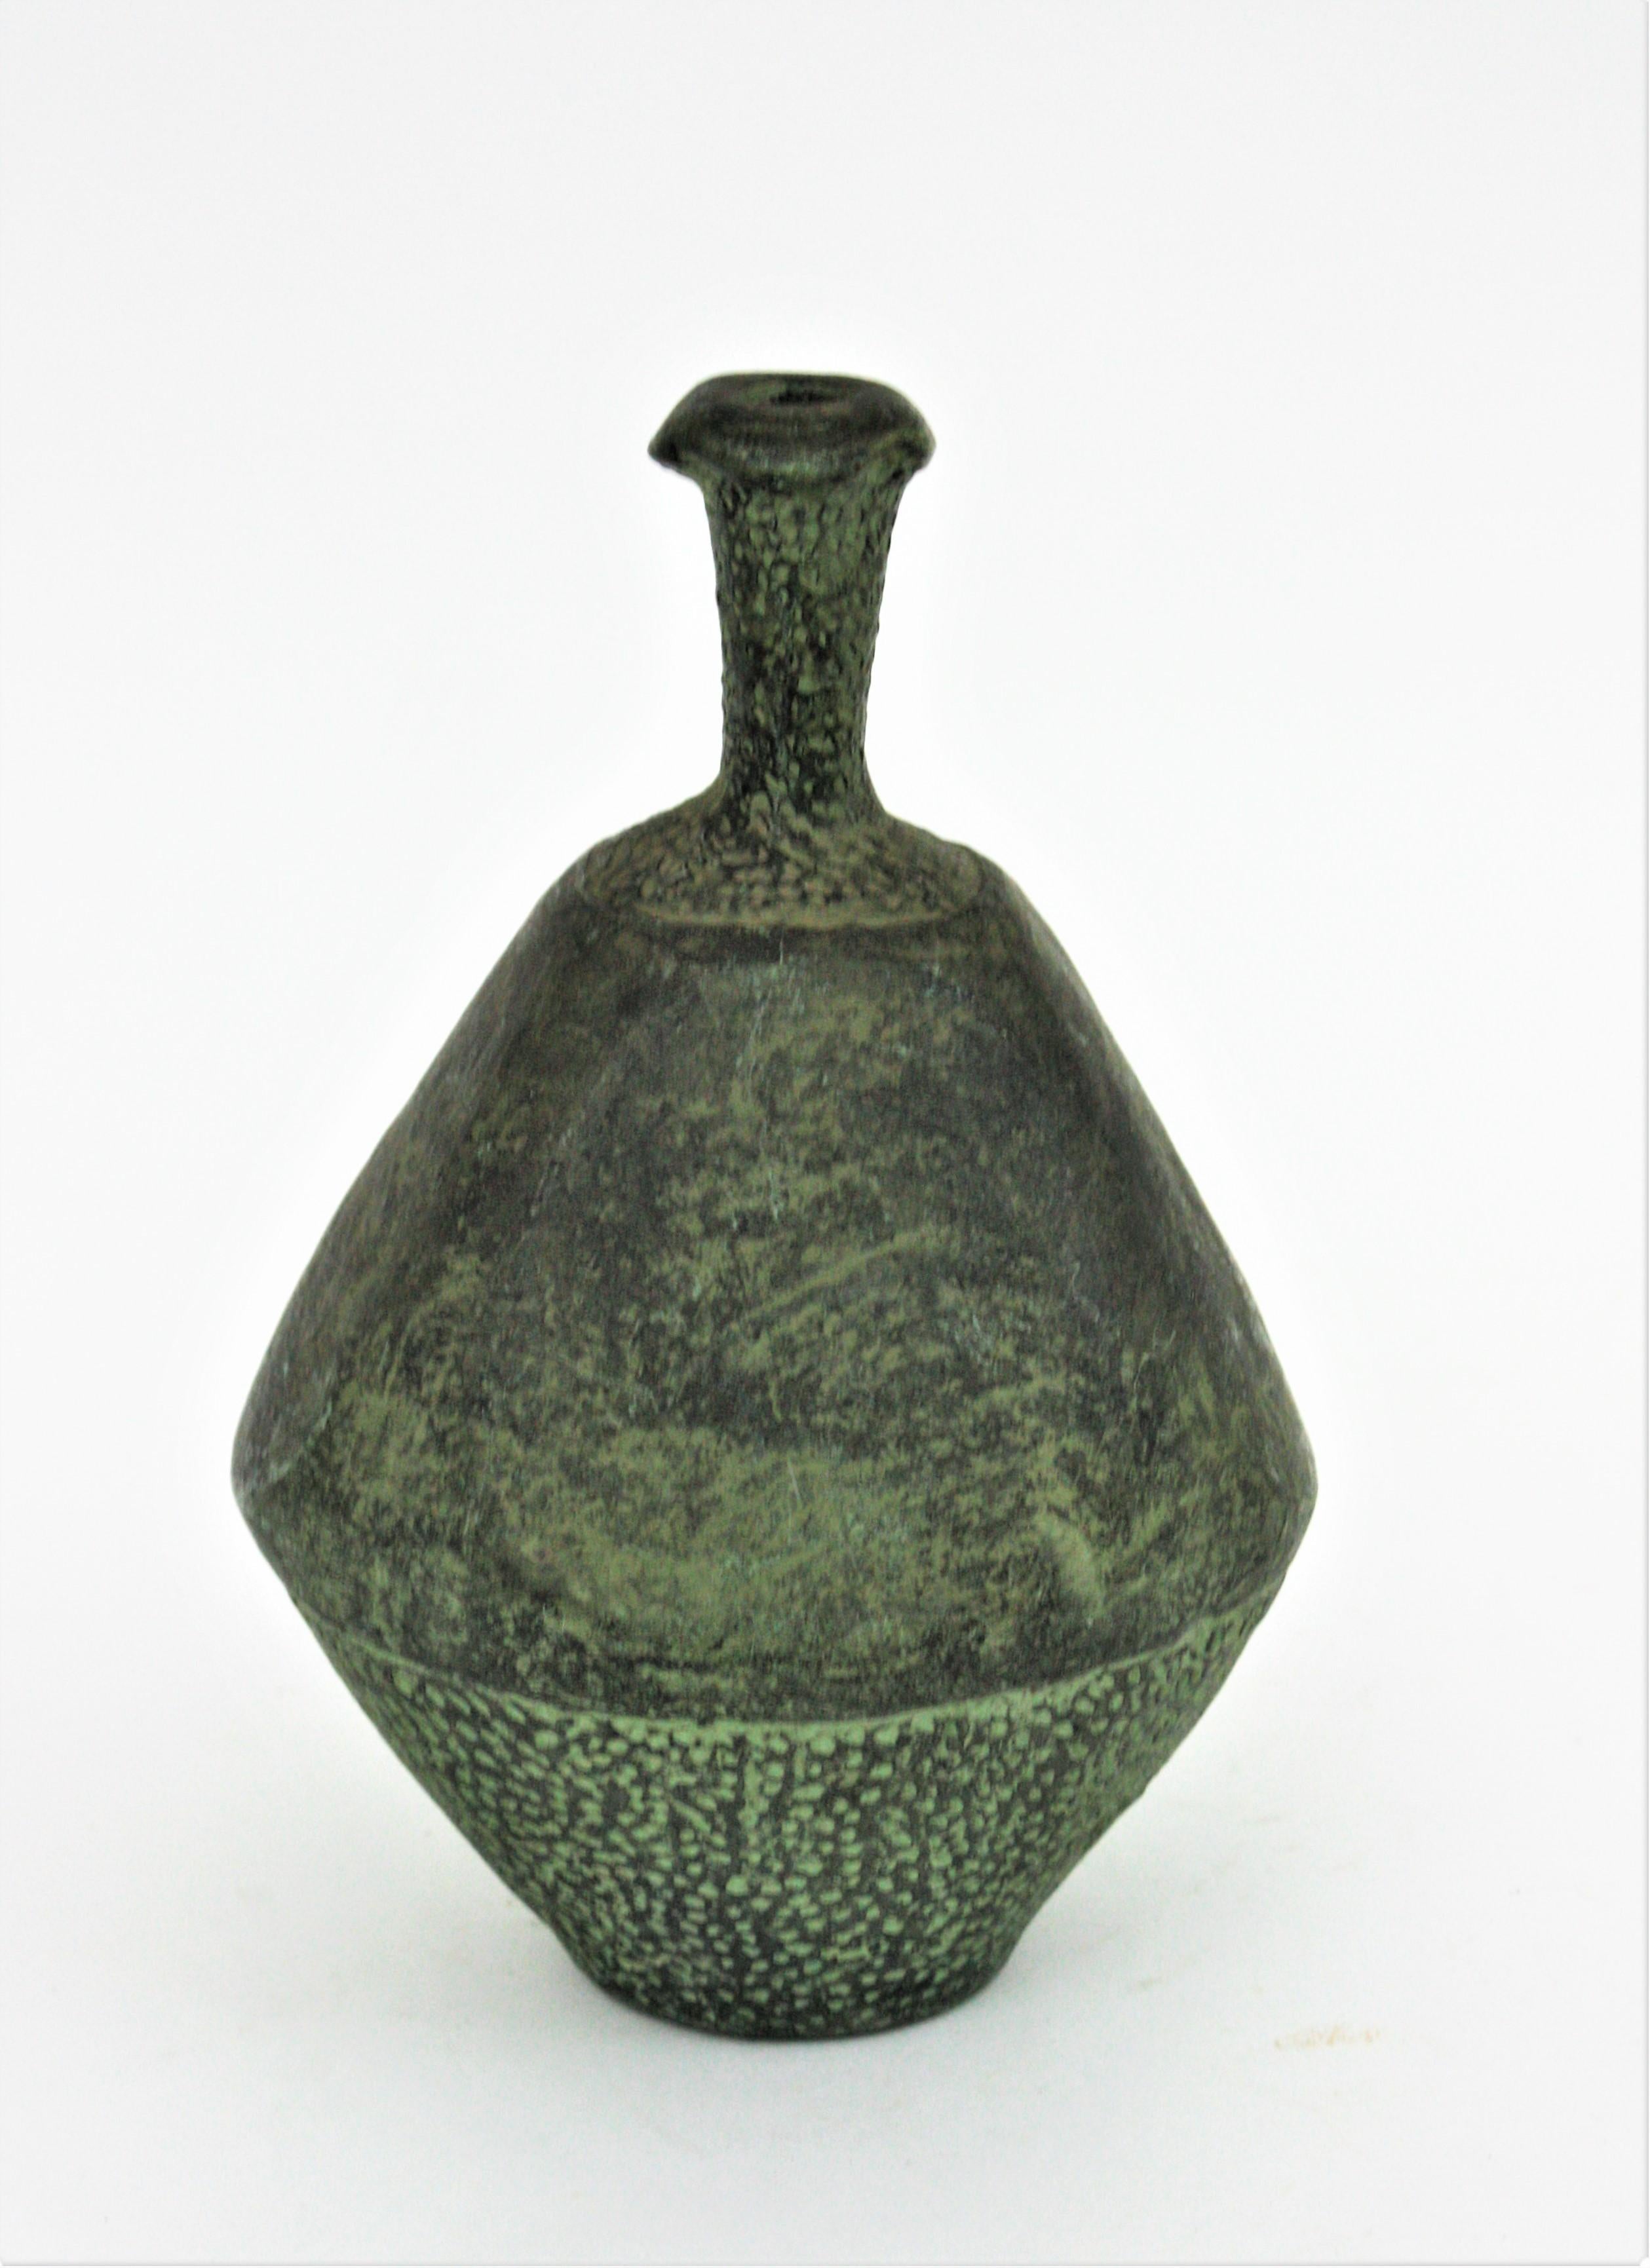 Spanish Green Terracotta Bottle Vase or Vessel For Sale 1